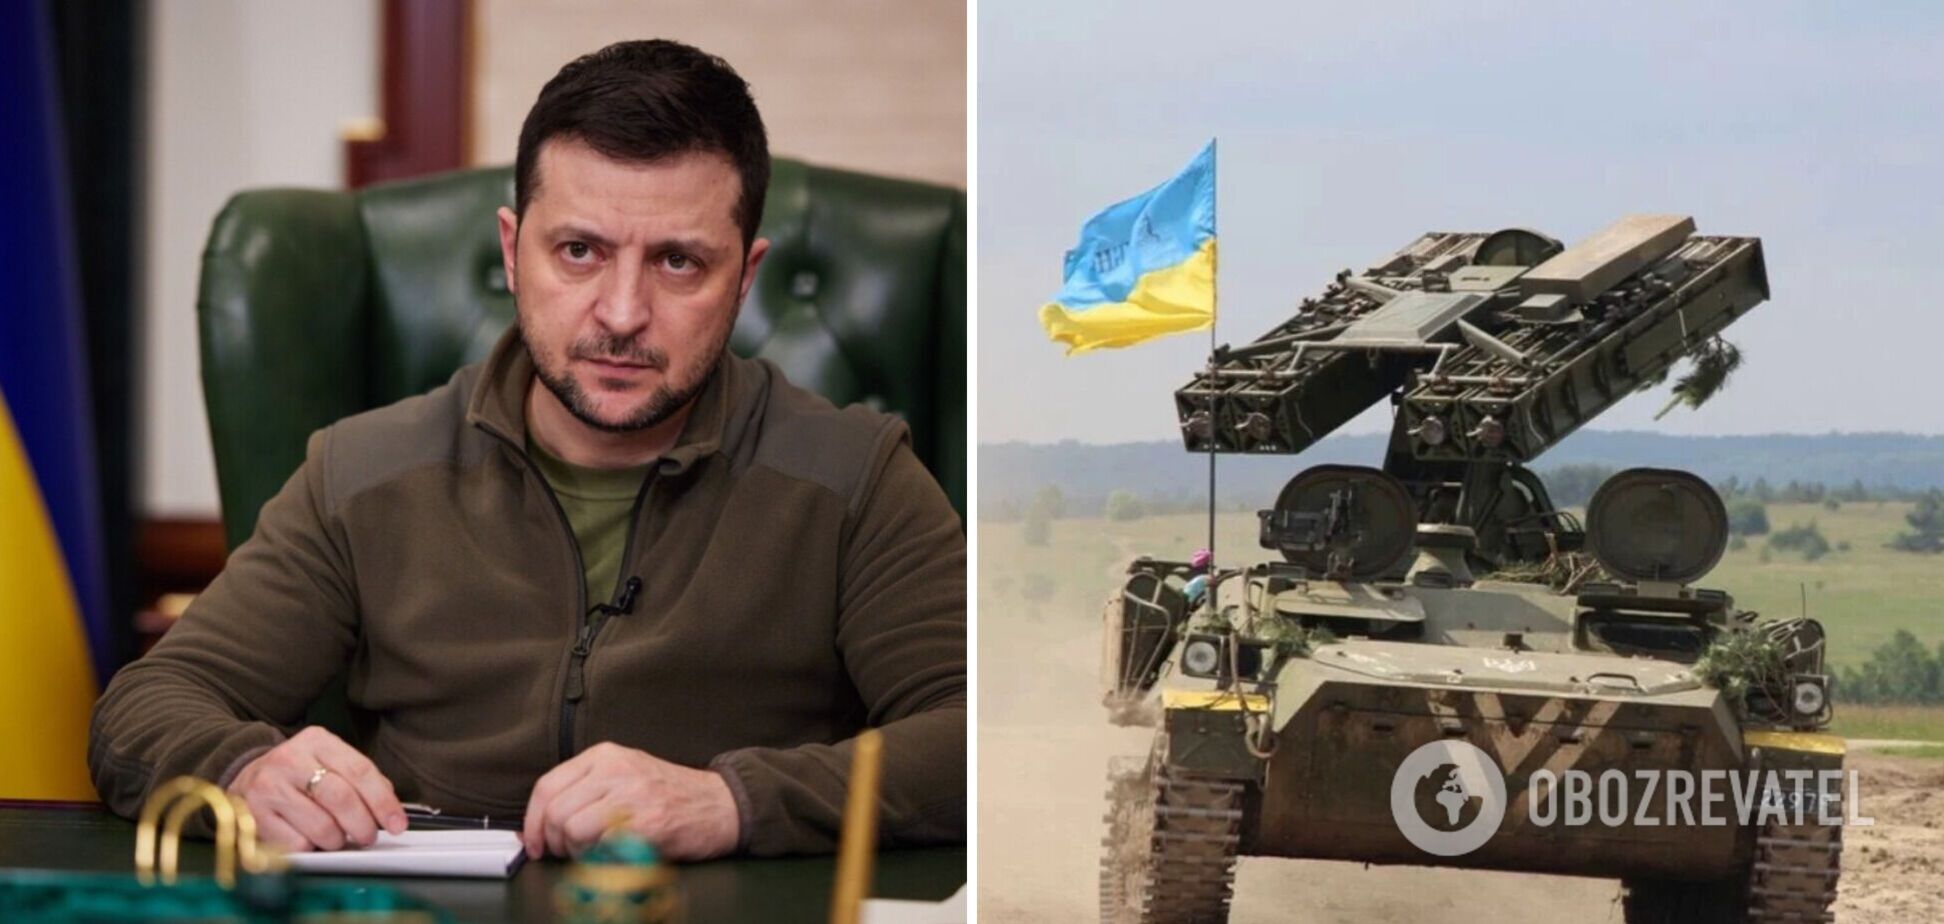 Україні потрібно більше систем ППО, щоб позбавити Росію терористичних можливостей, – Зеленський